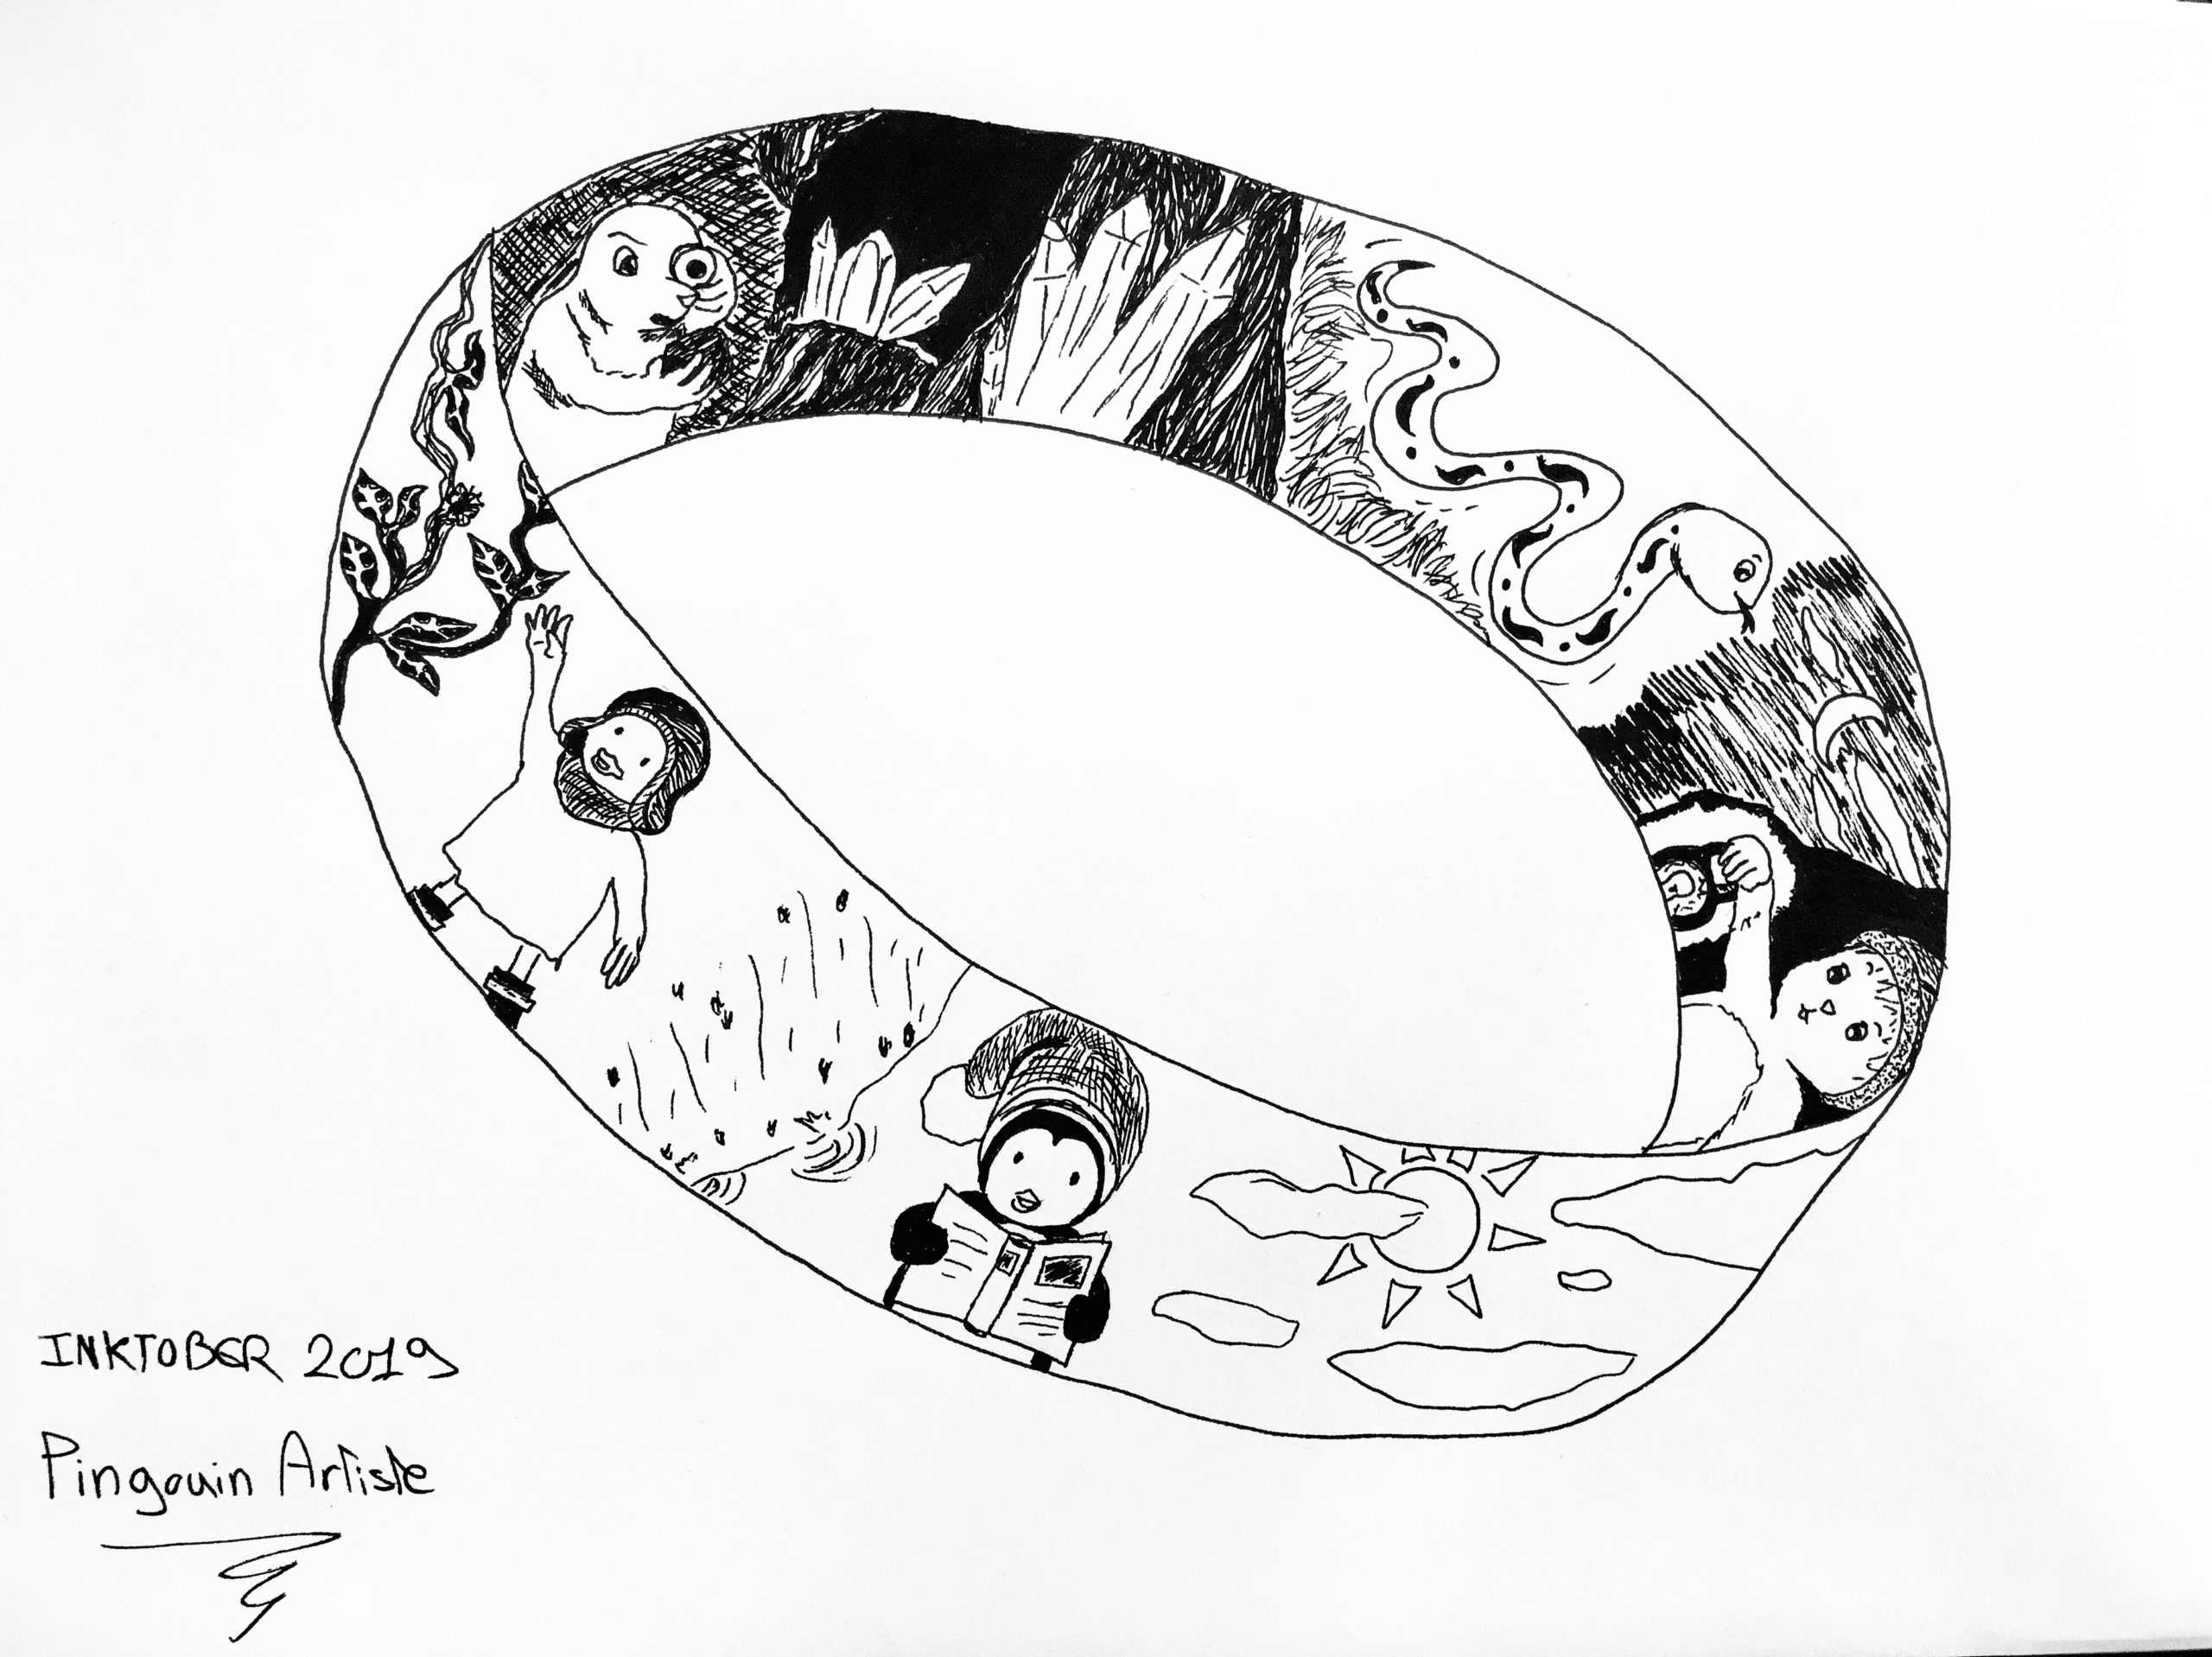 Inktober 2019: ce dessin est une interprétation du premier prompt "ring" représentant un anneau géant agrémenté de plusieurs petites images.